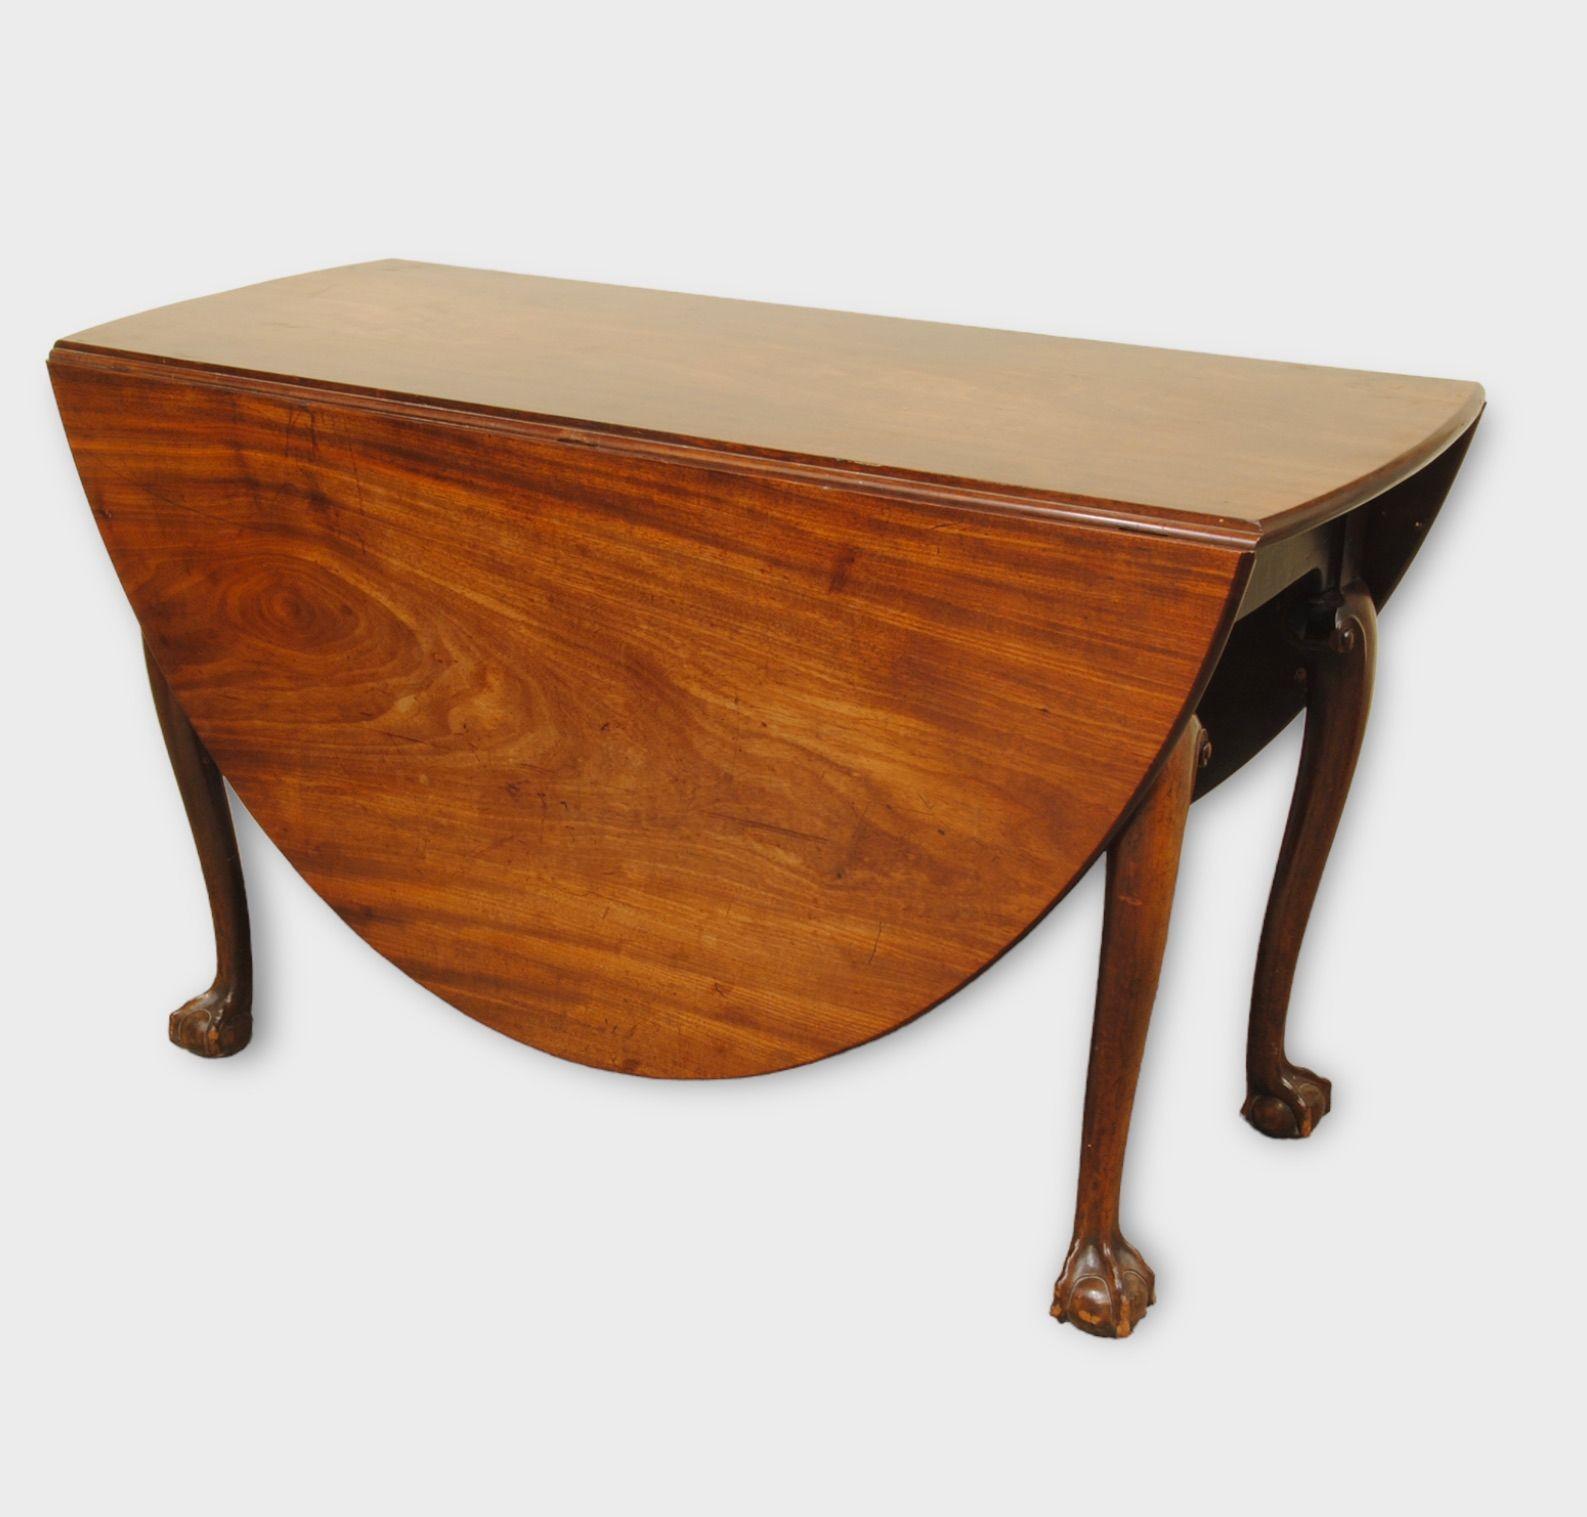 Ein Tisch mit Fallblatt aus Mahagoniholz von schöner Farbe und guter Qualität  mit gut geschnitzten Kugel- und Klauenfüßen. Hervorragende Farbe und Patina.
CIRCA 1770